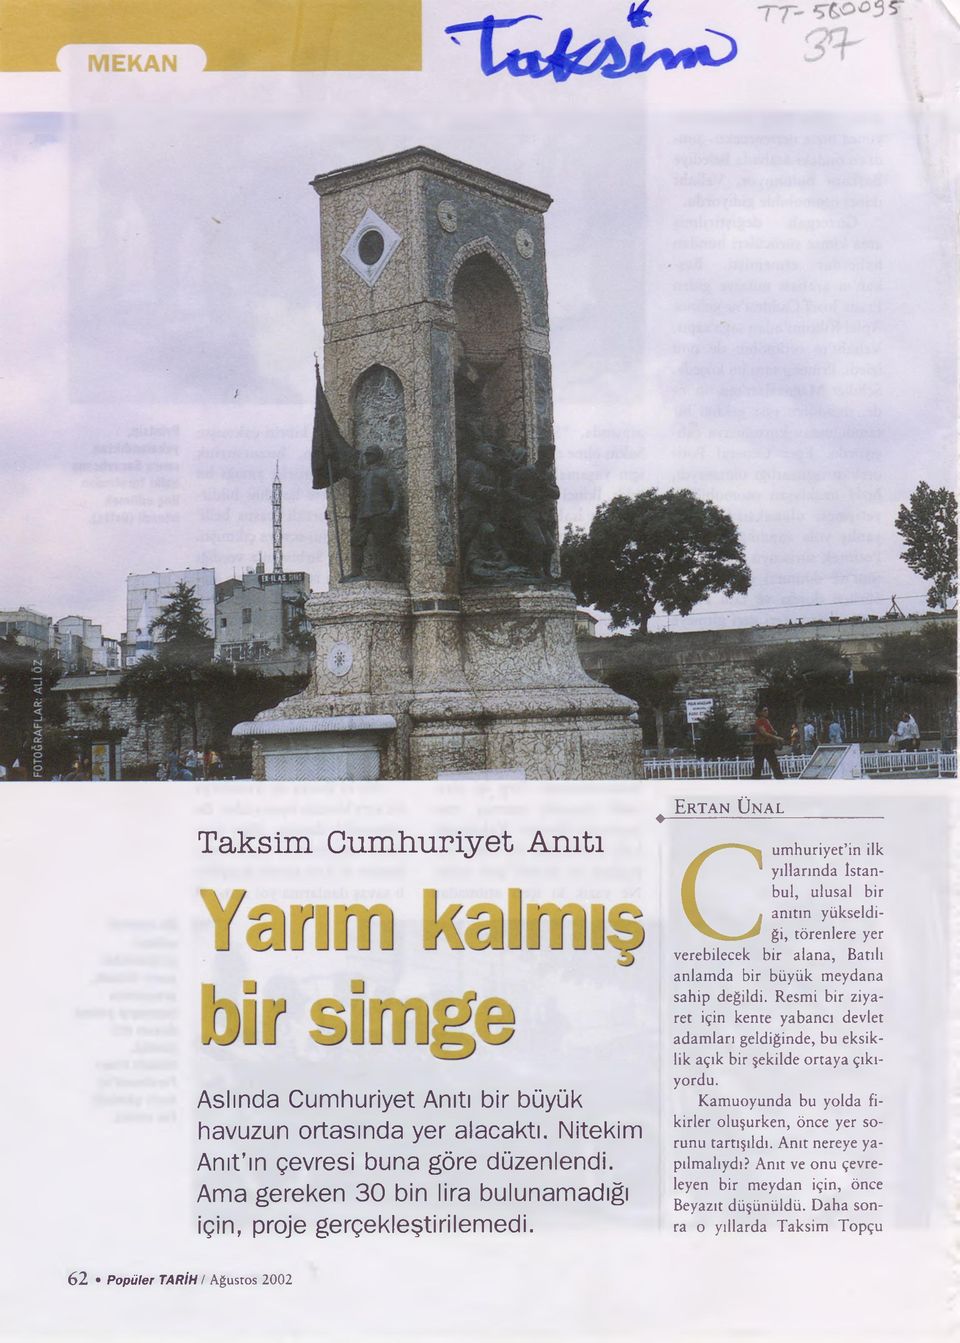 ^ Ertan Ünal ------------------------------------ Cumhuriyet in ilk yıllarında İstanbul, ulusal bir anıtın yükseldiği, törenlere yer verebilecek bir alana, Batılı anlamda bir büyük